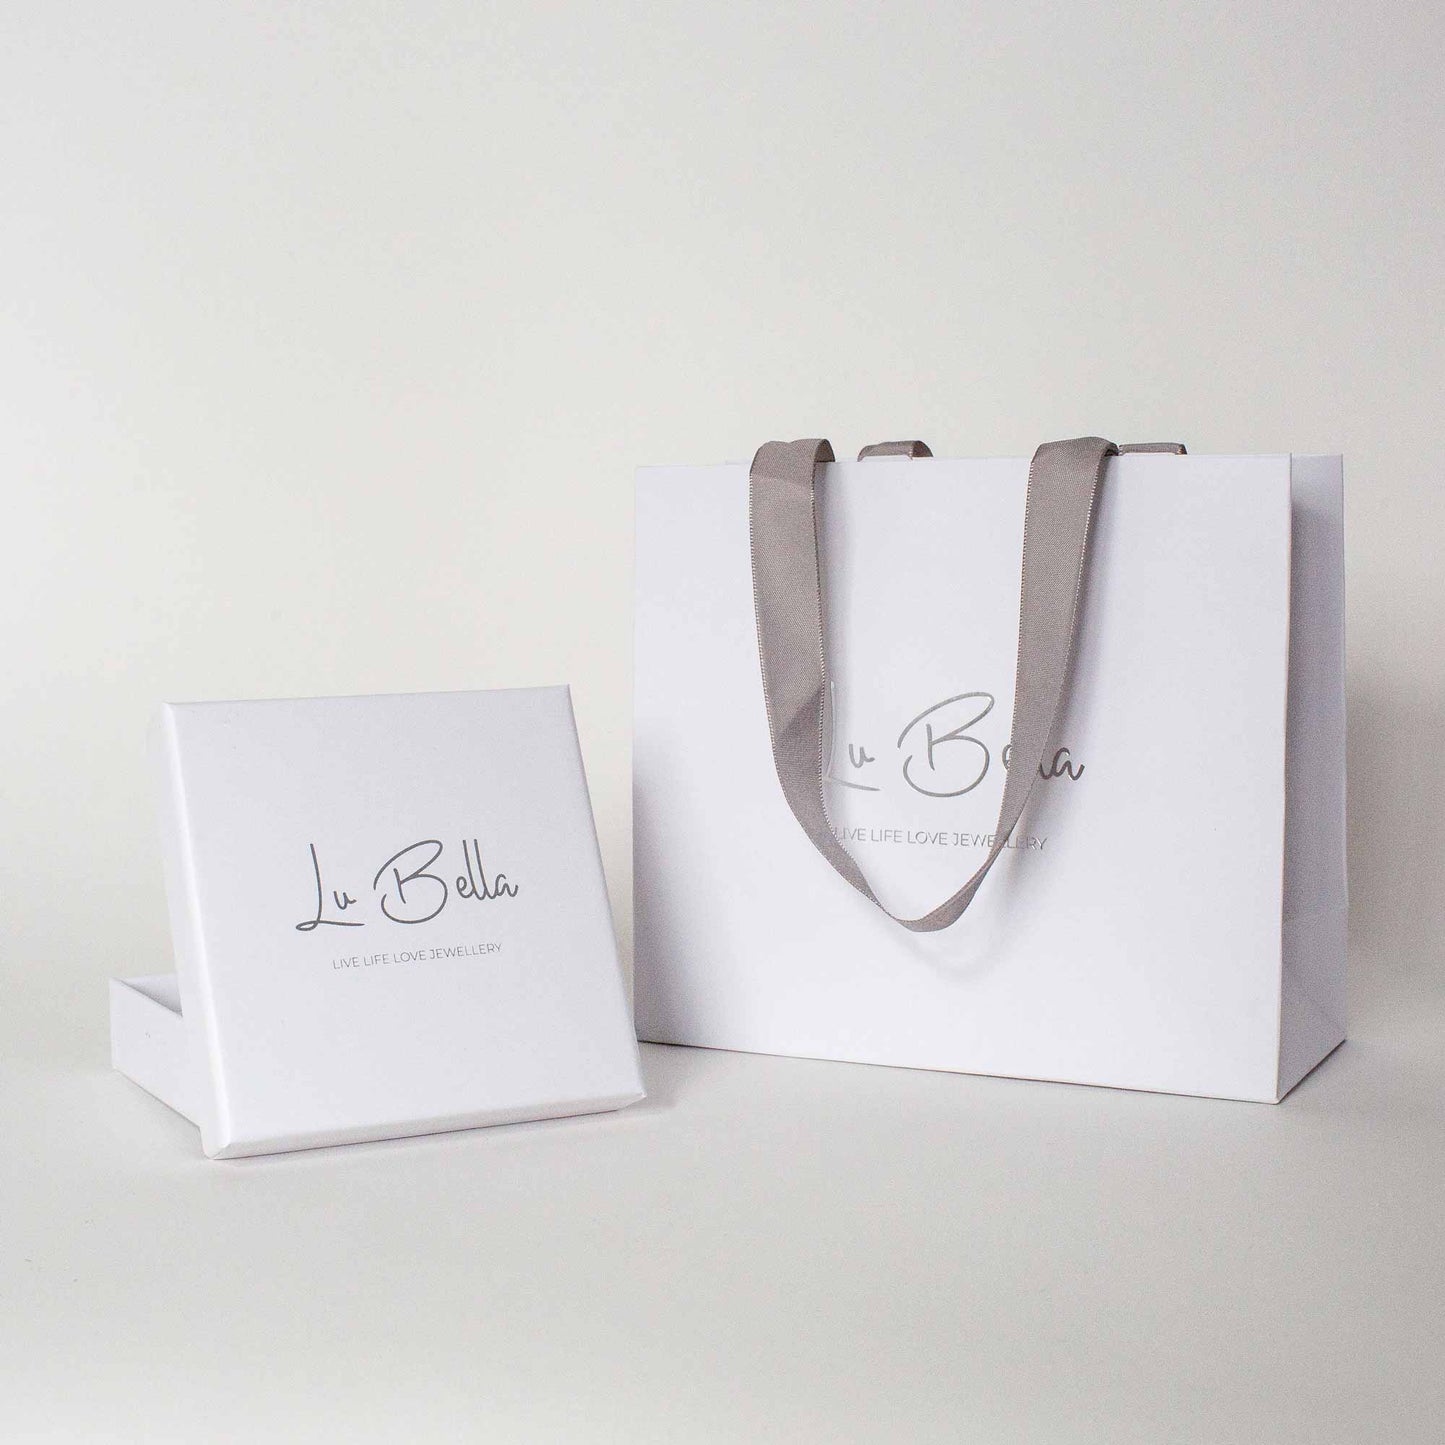 Lu Bella Gift Bag & Box